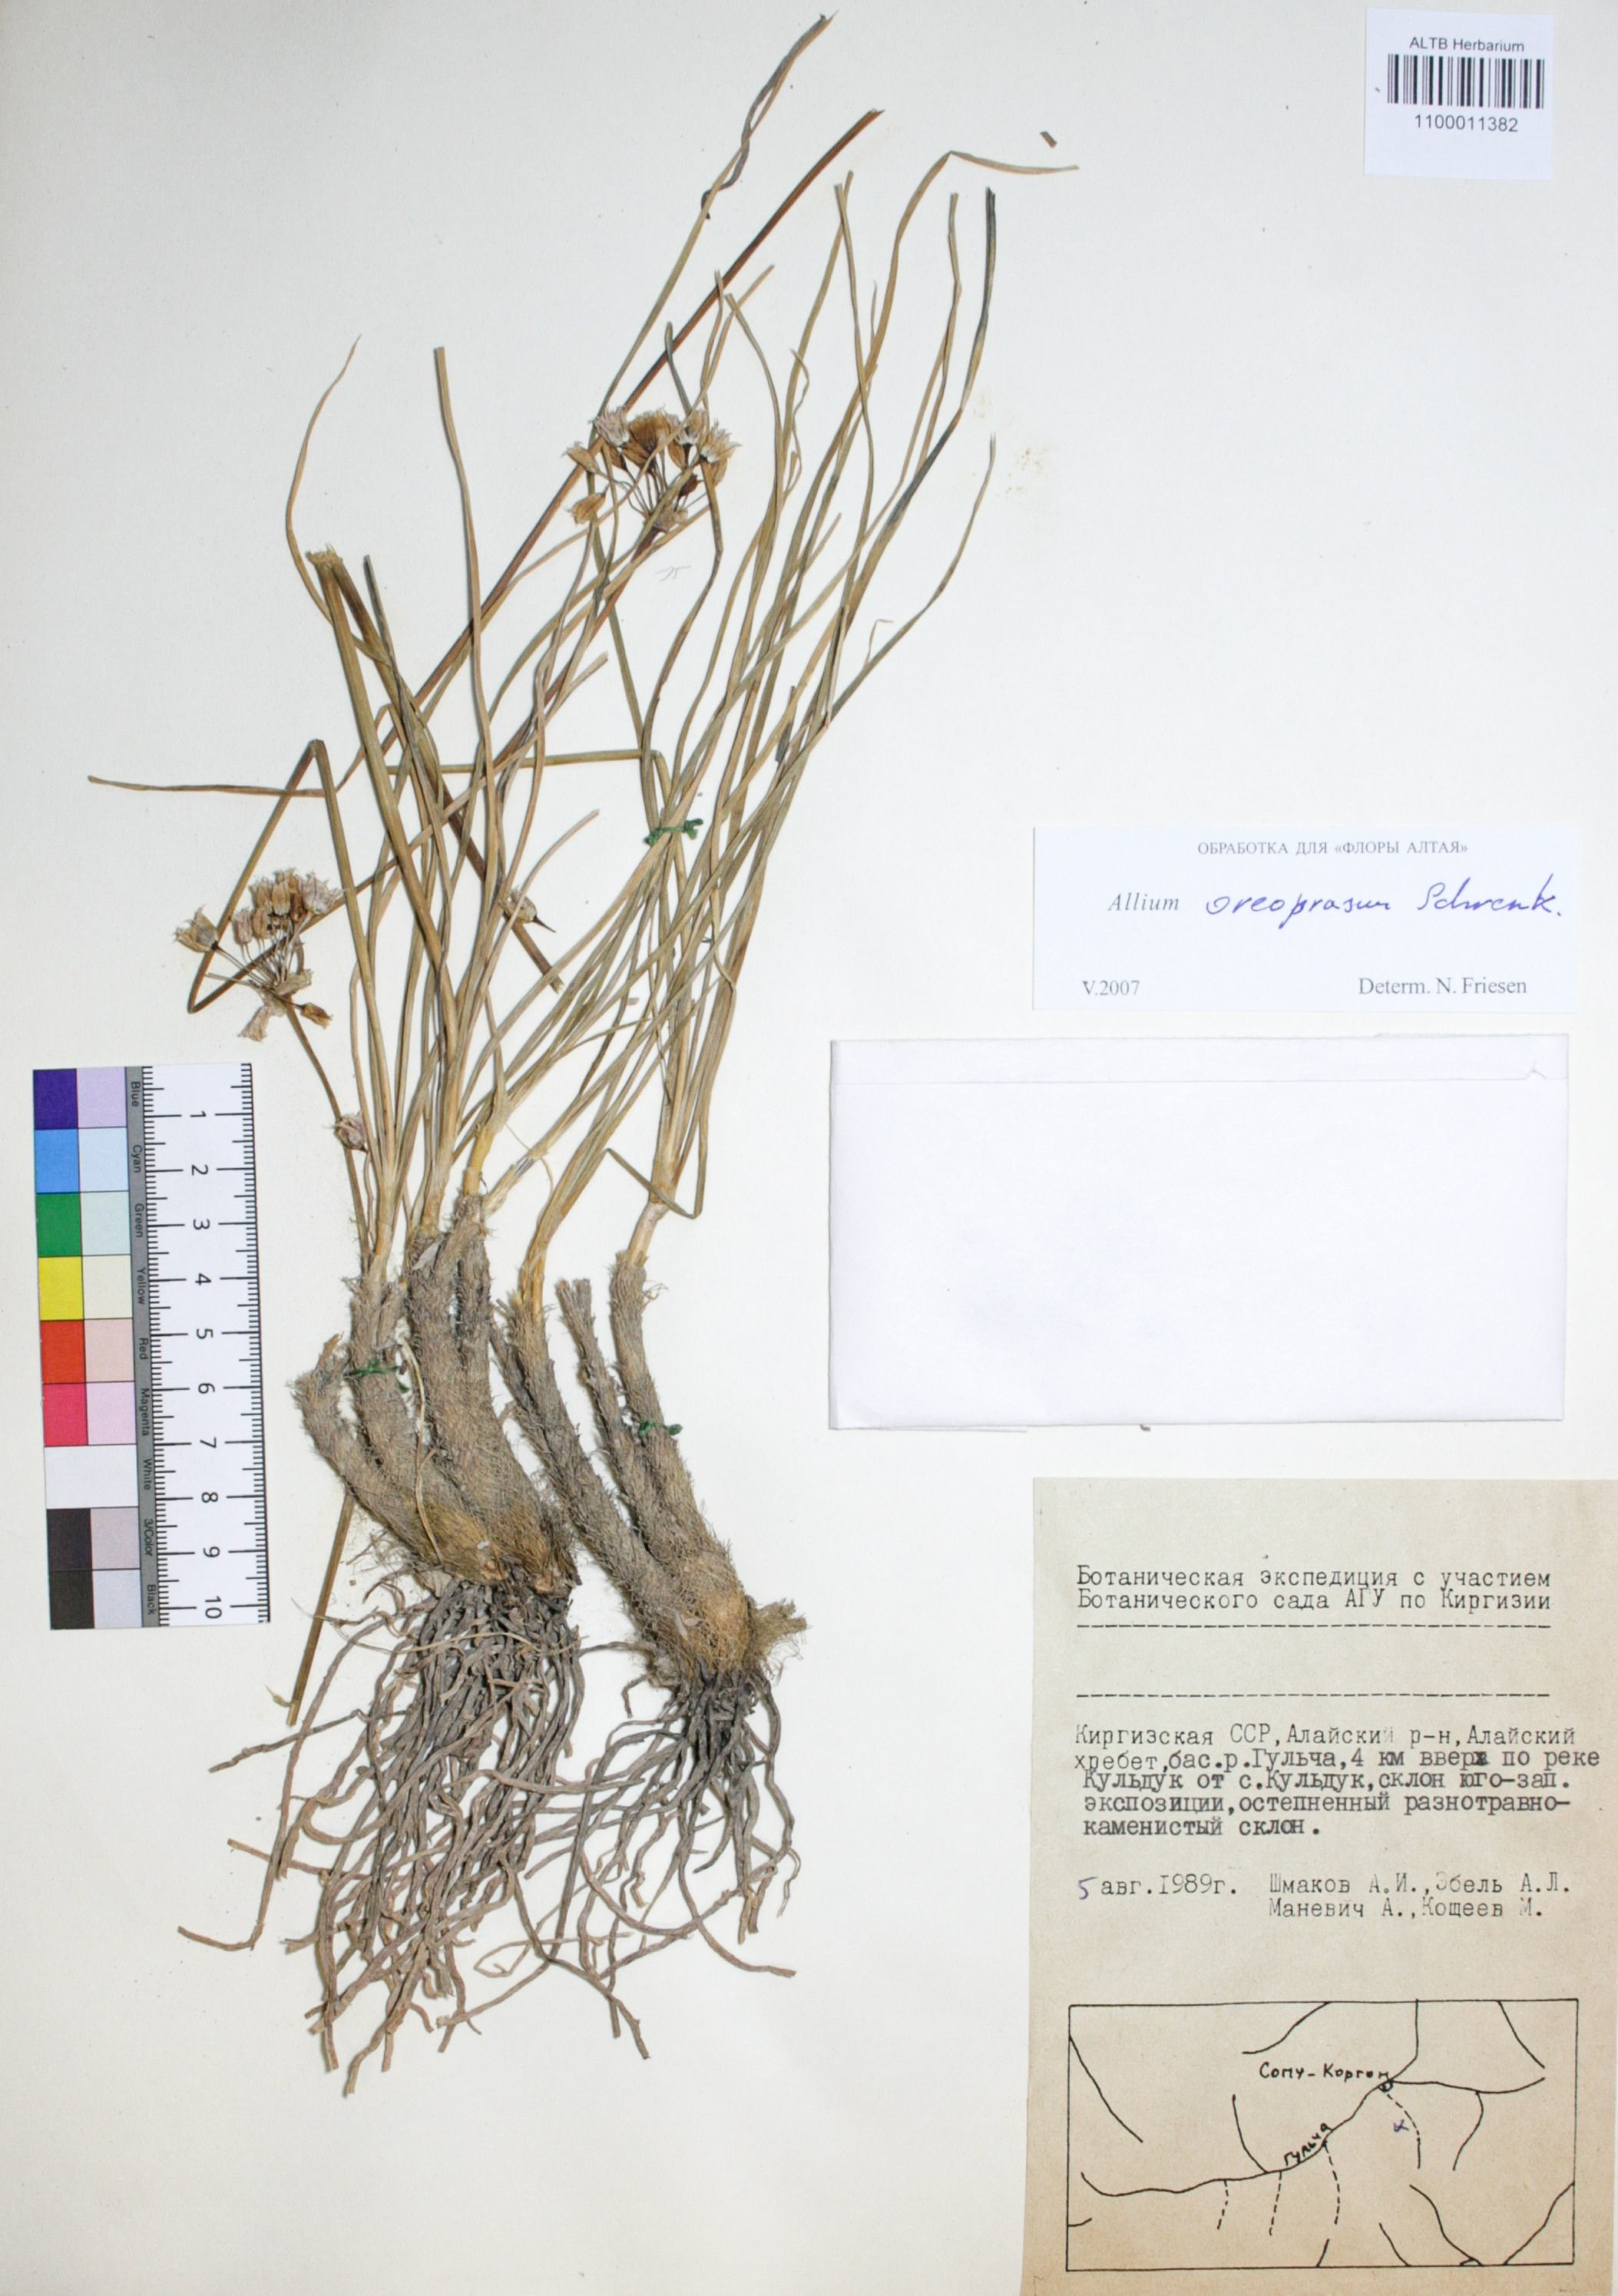 Allium oreoprasum Schrenk.